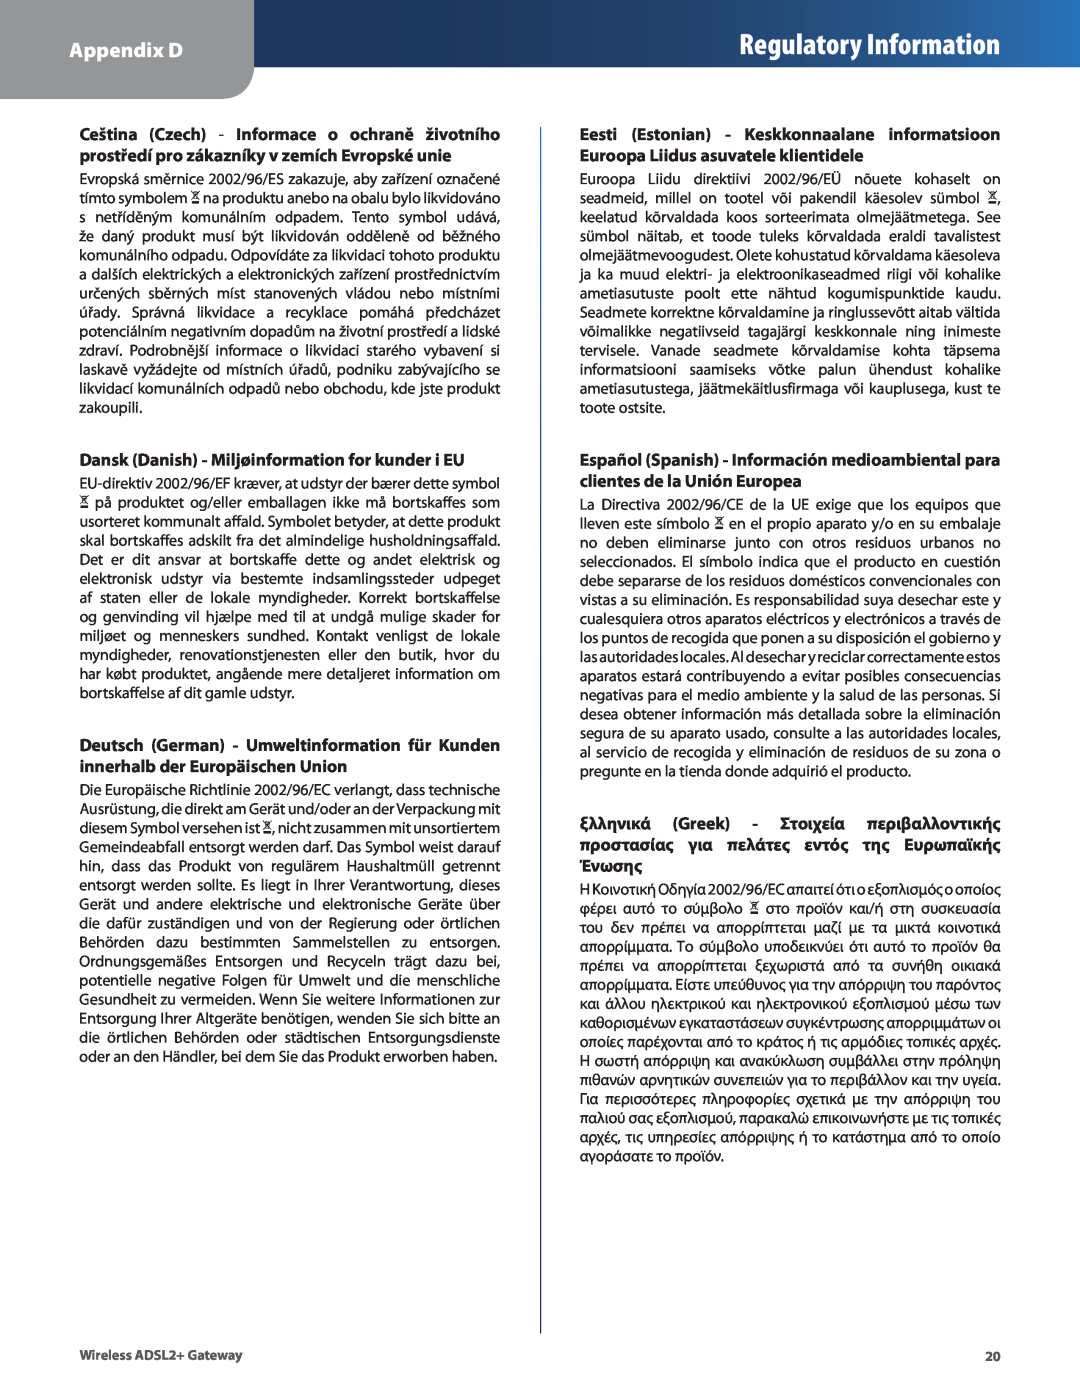 Linksys WAG54G2, WAG160N, WAG110 manual Regulatory Information, Appendix D, Dansk Danish - Miljøinformation for kunder i EU 